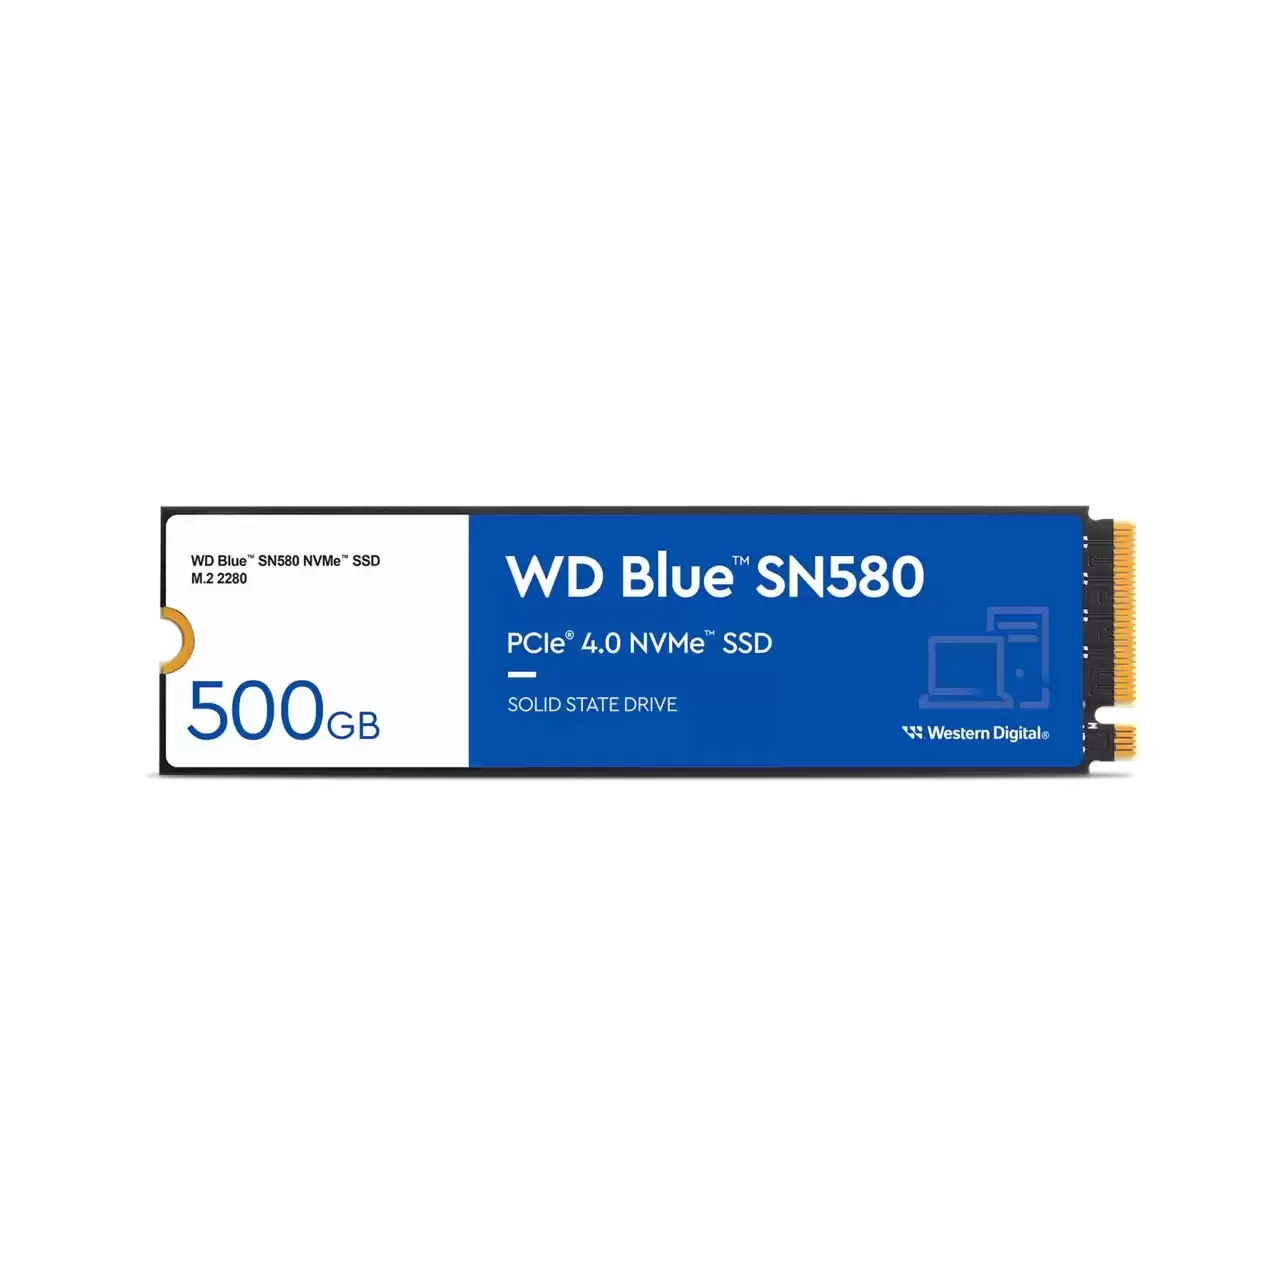 Hard disk ssd western digital wd blue sn580 500gb m.2 2280